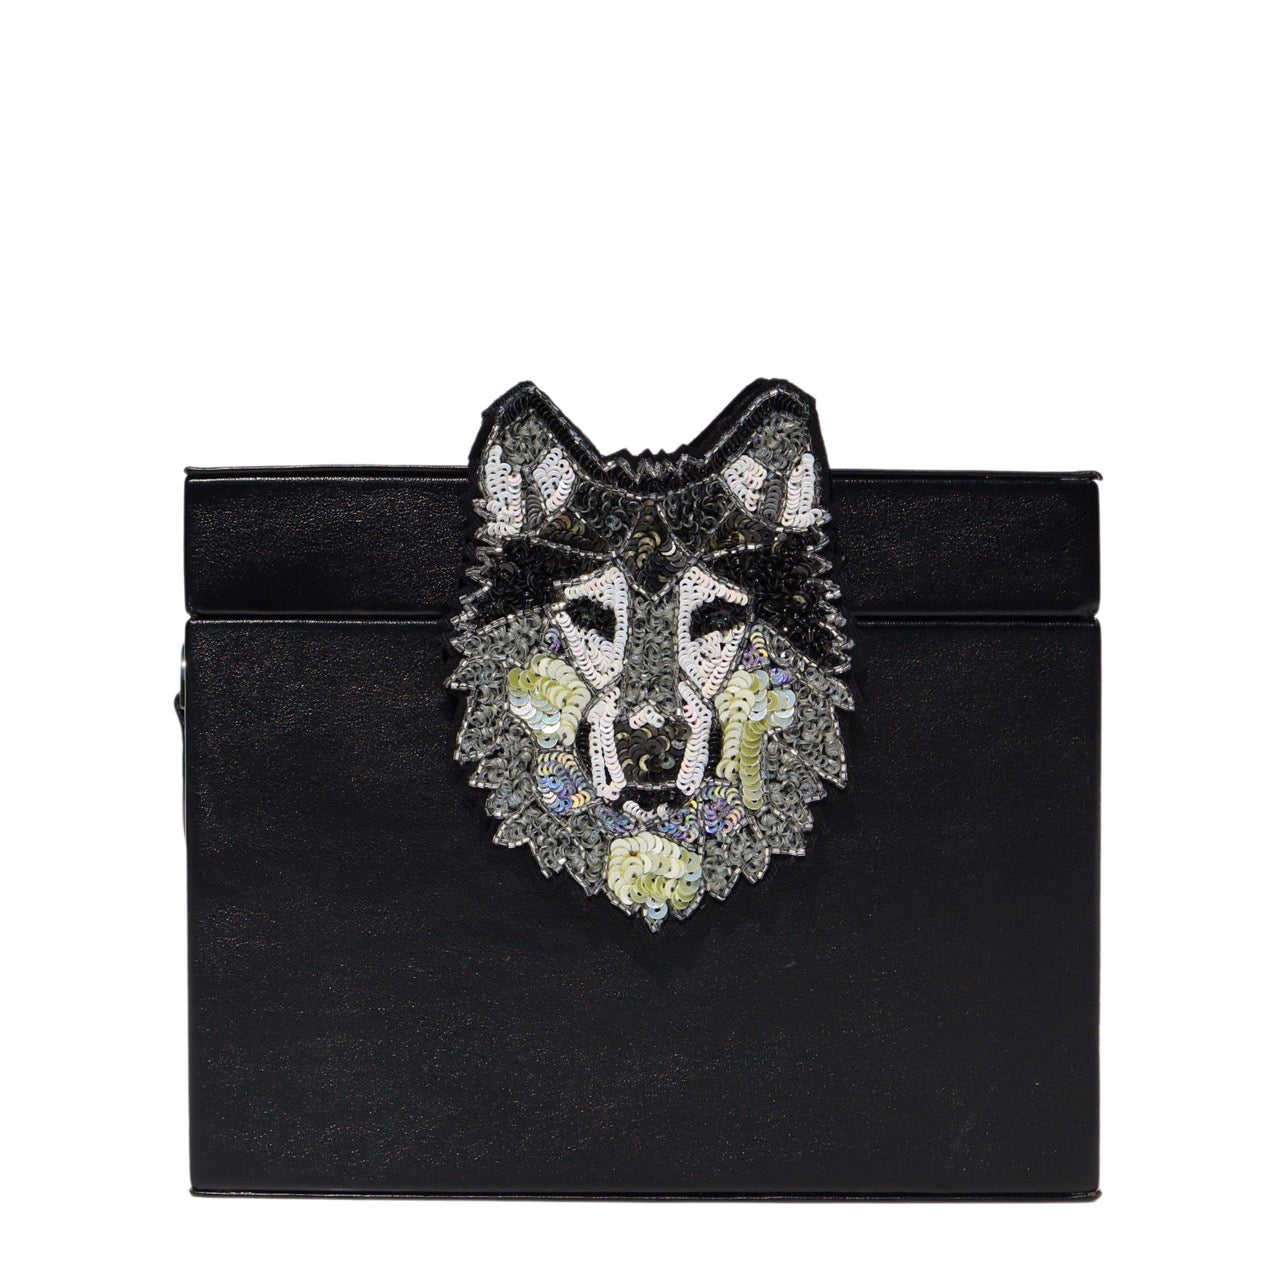 Husky Briefcase Bag by Simitri